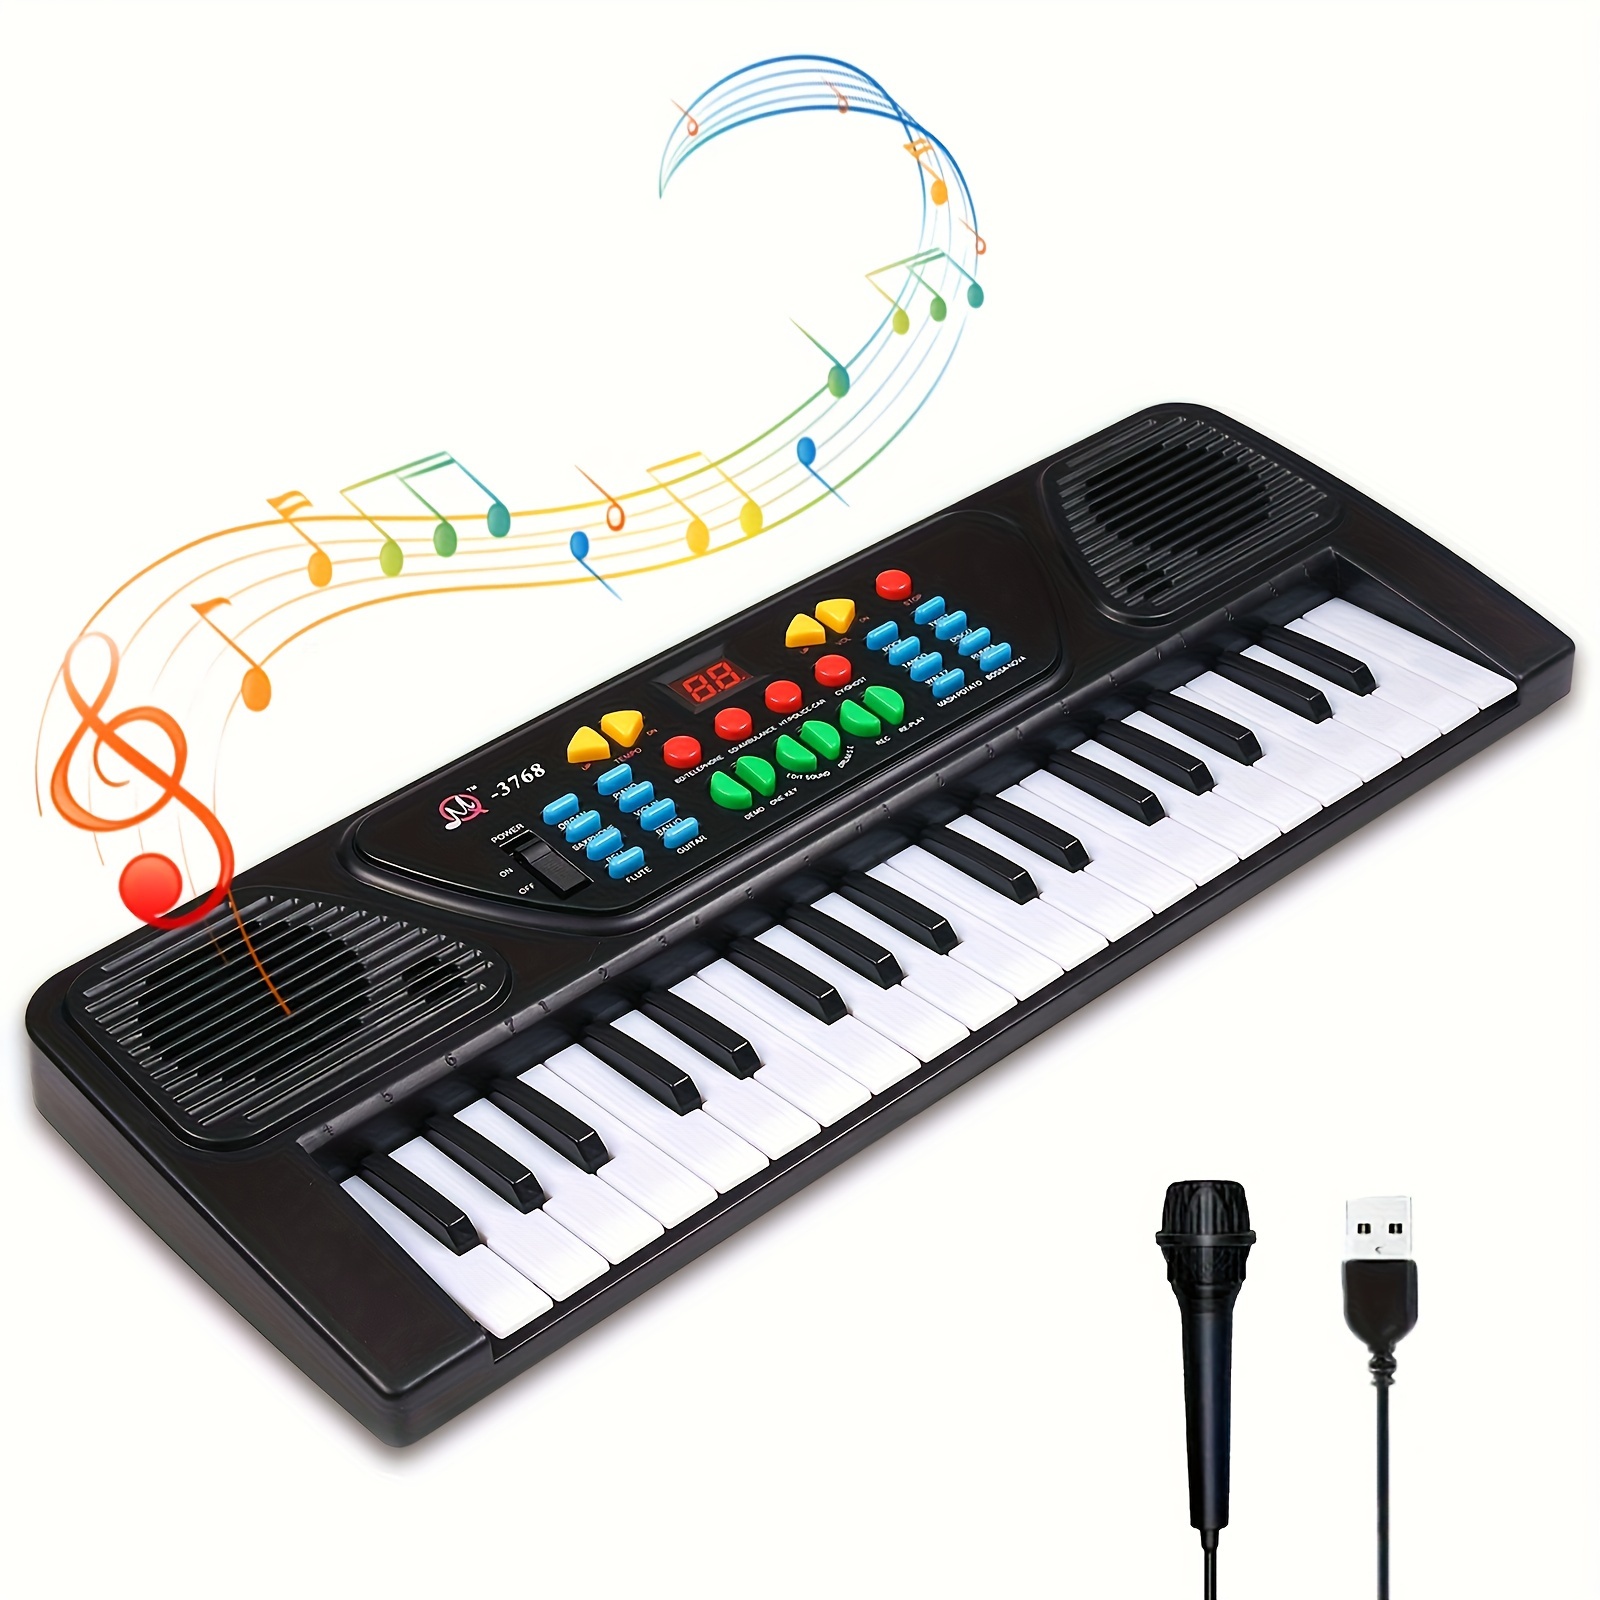 Tastiera per pianoforte 61, tastiera portatile per pianoforte con supporto  musicale, microfono, tastiera elettronica per pianoforte digitale Power  Music, adatta per bambini / adulti